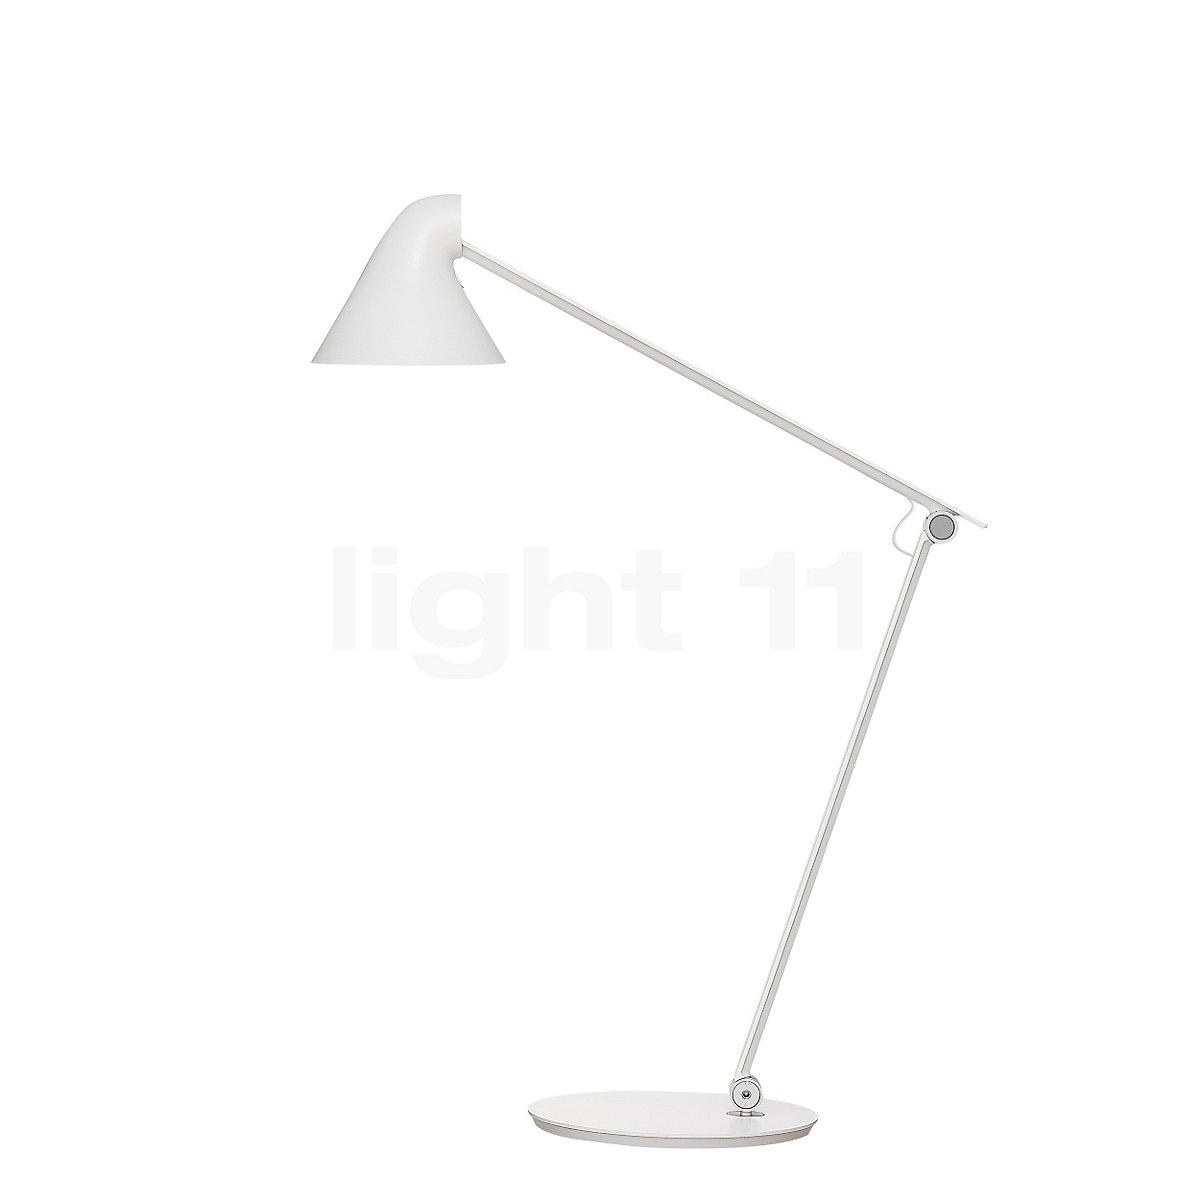 Louis Poulsen Njp Table Lamp At Light11 Eu, Njp Led Table Lamp